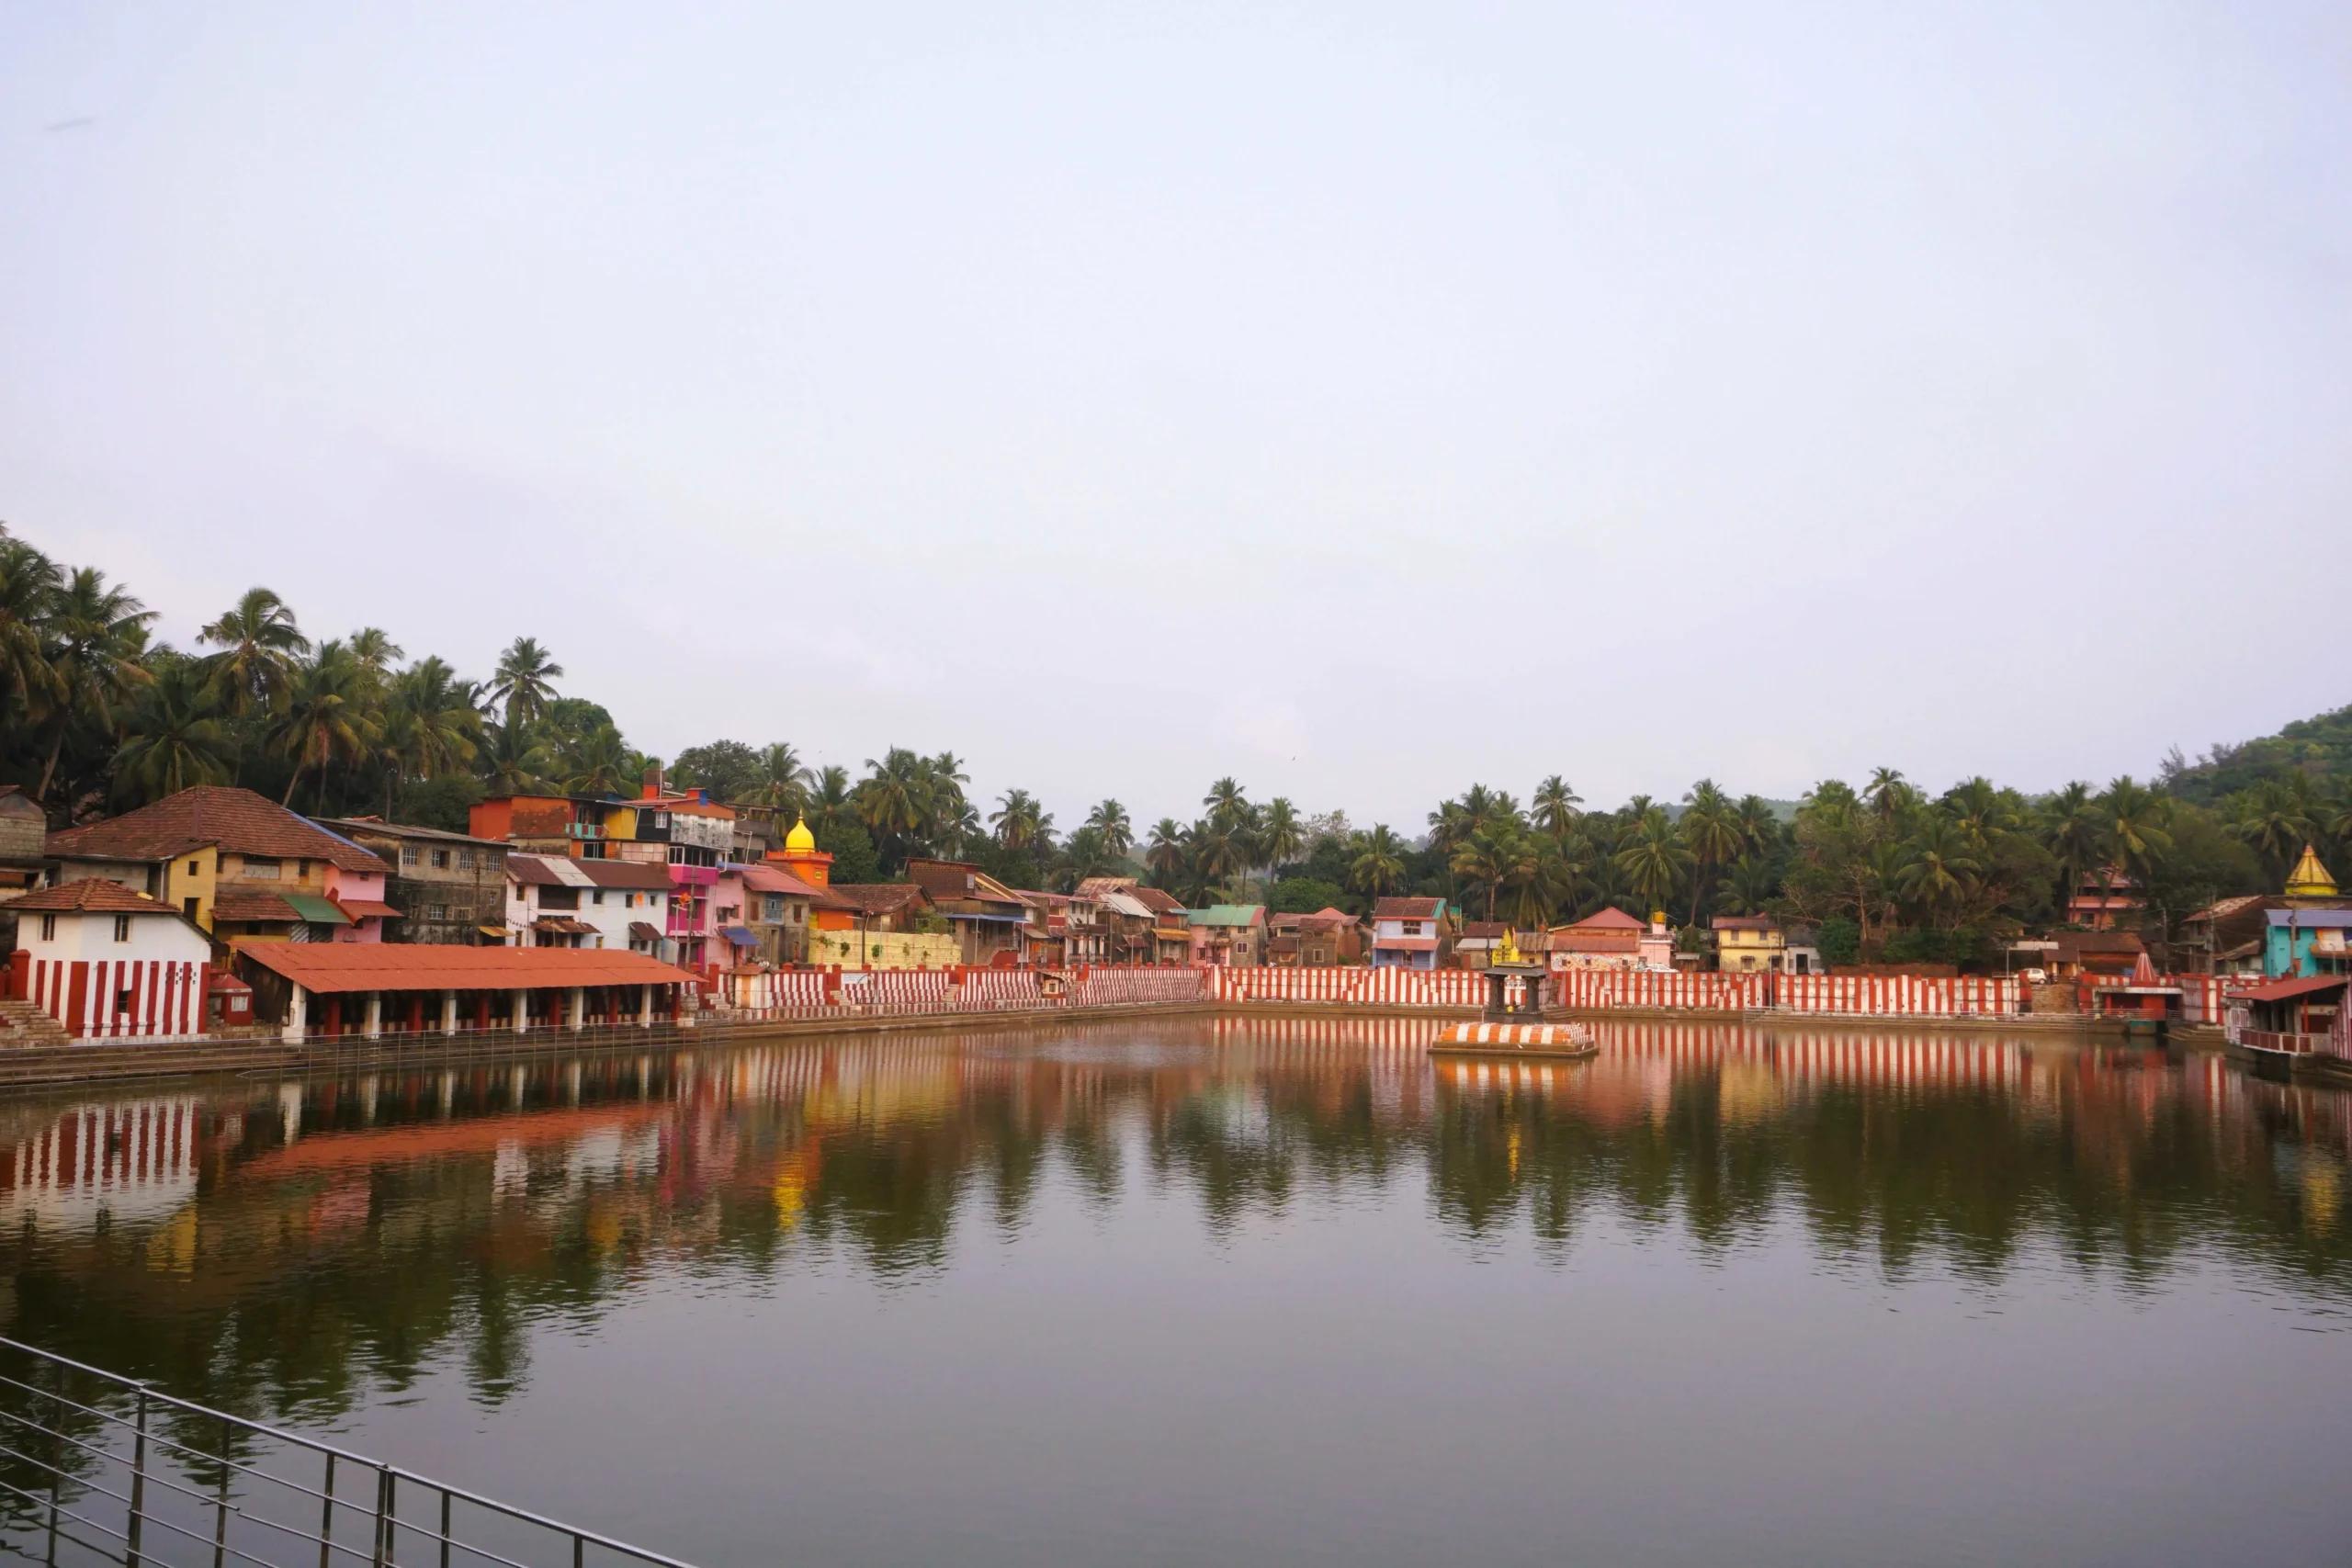 Kotiteertha Holy pond in Gokarna